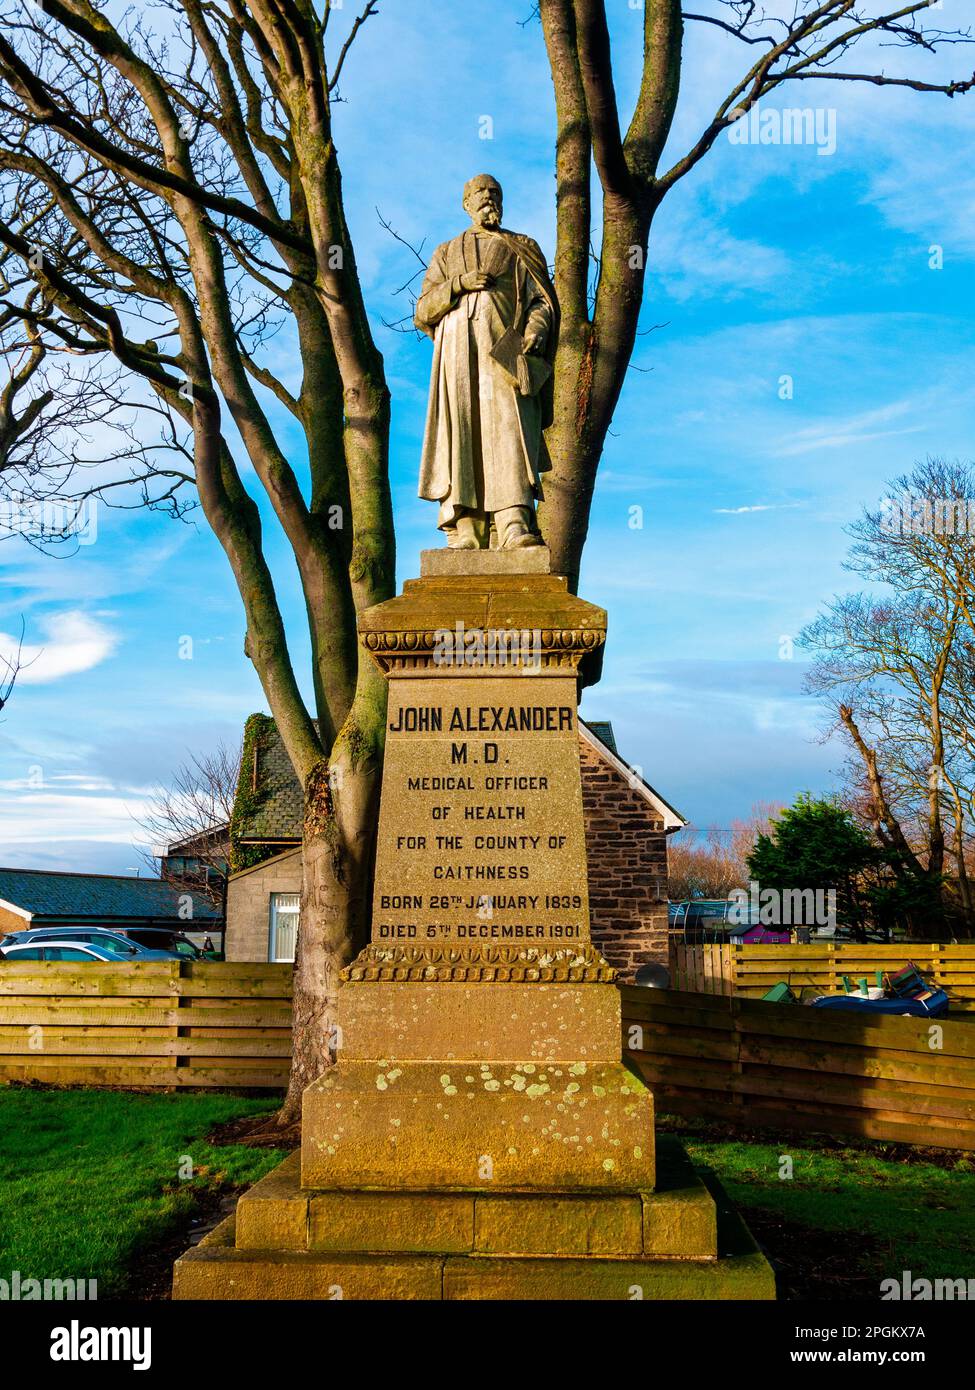 Statue de John Alexander MD, le premier médecin-hygiéniste du comté de Caithness. Wick, Caithness, Écosse, Royaume-Uni. Banque D'Images